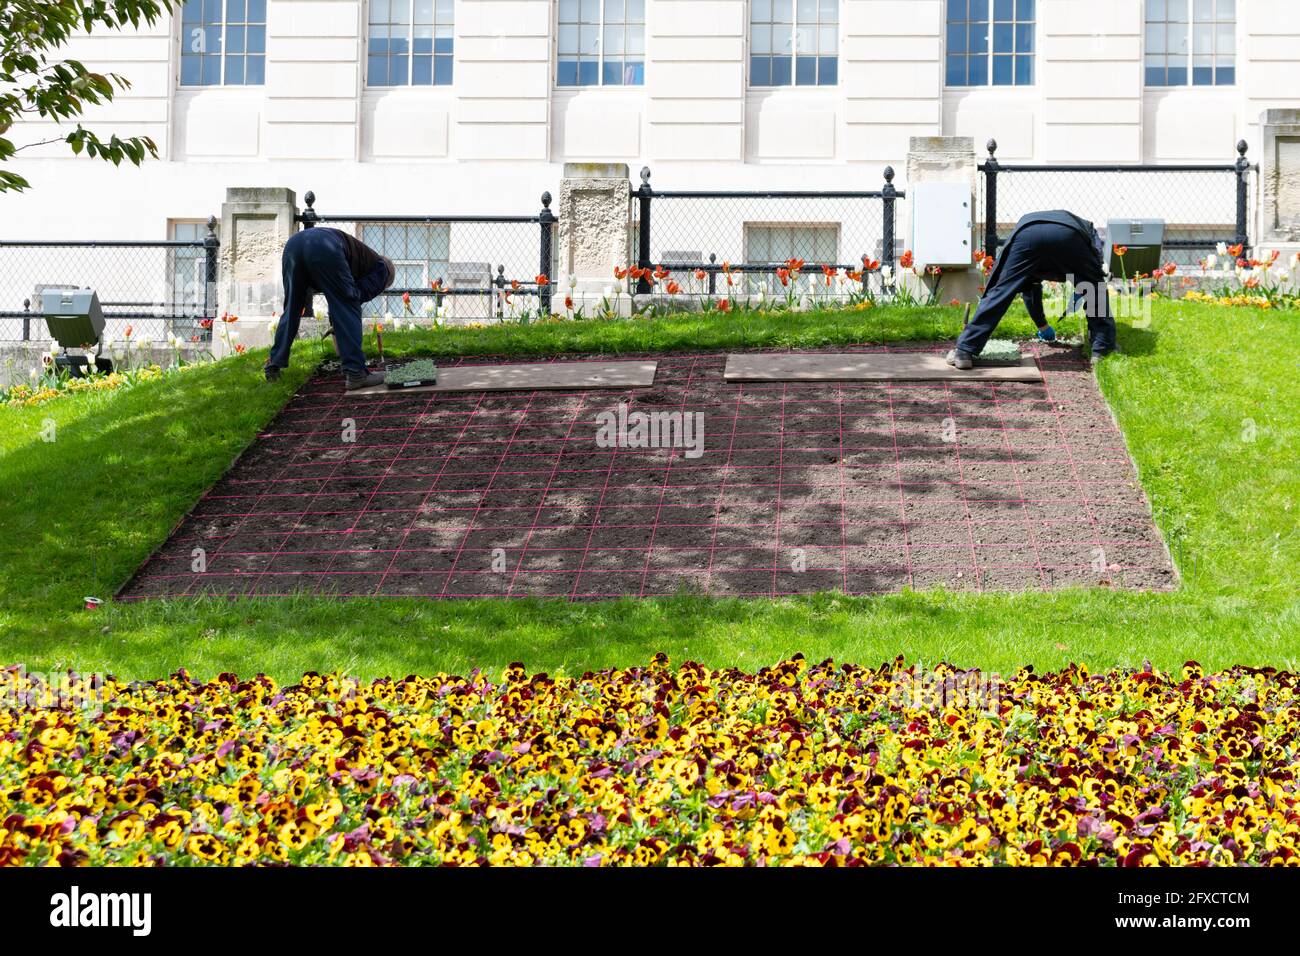 Jardiniers plantant des plantes de literie pour une exposition à l'extérieur de l'hôtel de ville de Barnsley à l'aide d'une grille marquée de ficelle, Barnsley, South Yorkshire, Angleterre, Royaume-Uni Banque D'Images